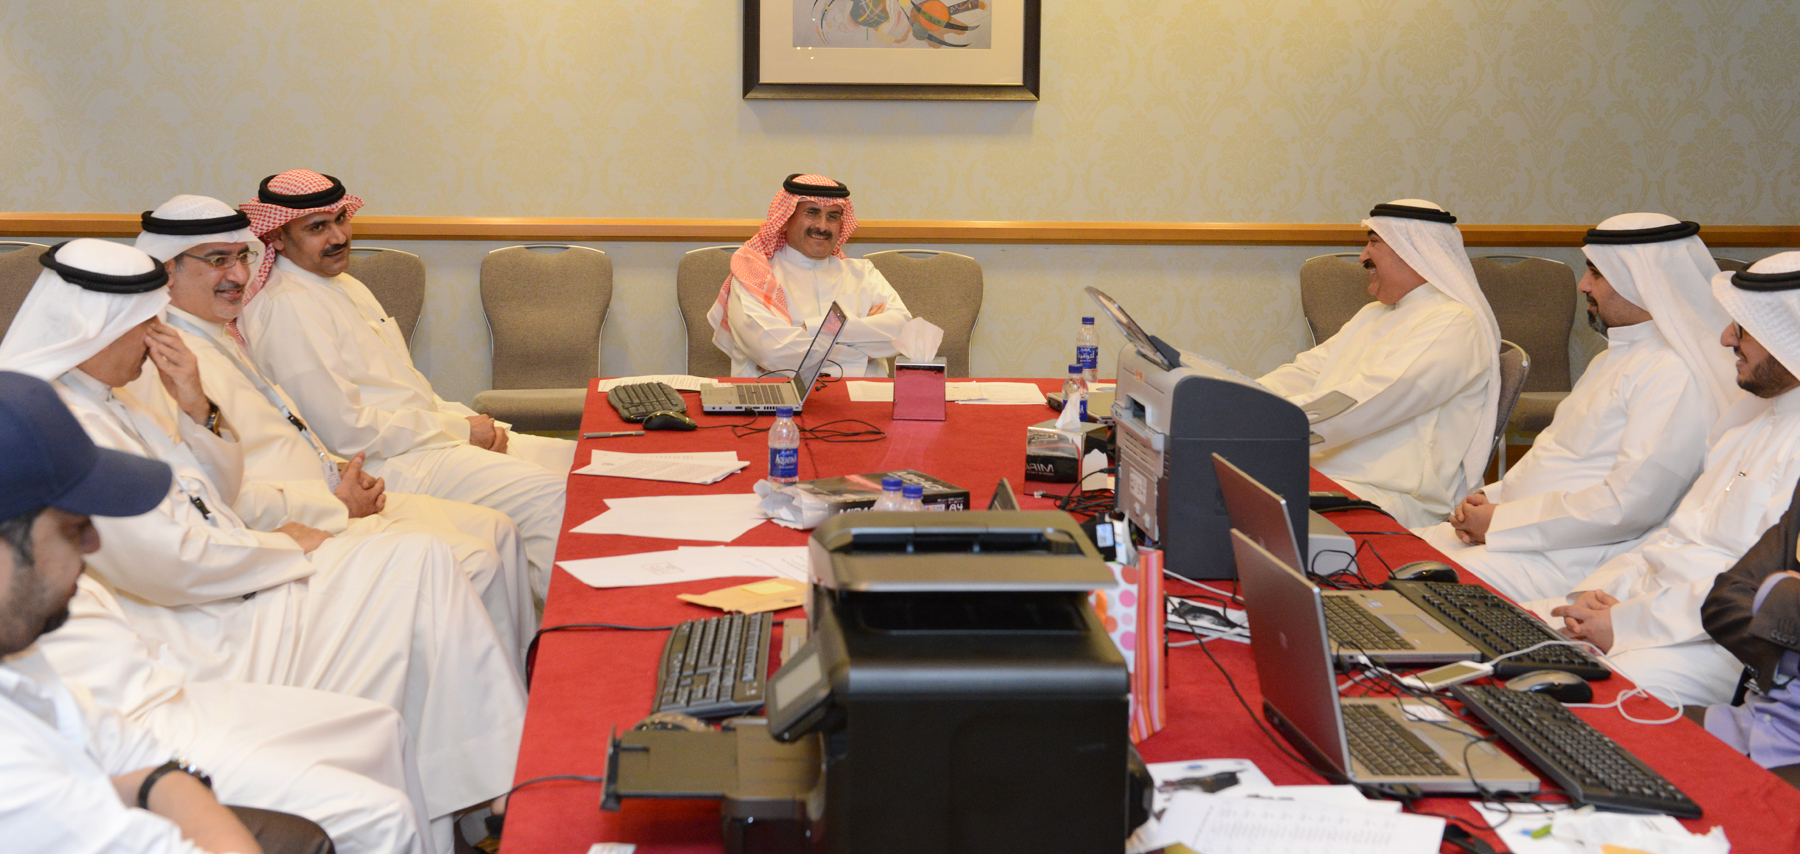 رئيس مجلس الادارة المدير العام لوكالة الانباء الكويتية (كونا) الشيخ مبارك دعيج الابراهيم الصباح خلال تفقده مركز (كونا) في فندق (كورت يارد ماريوت)